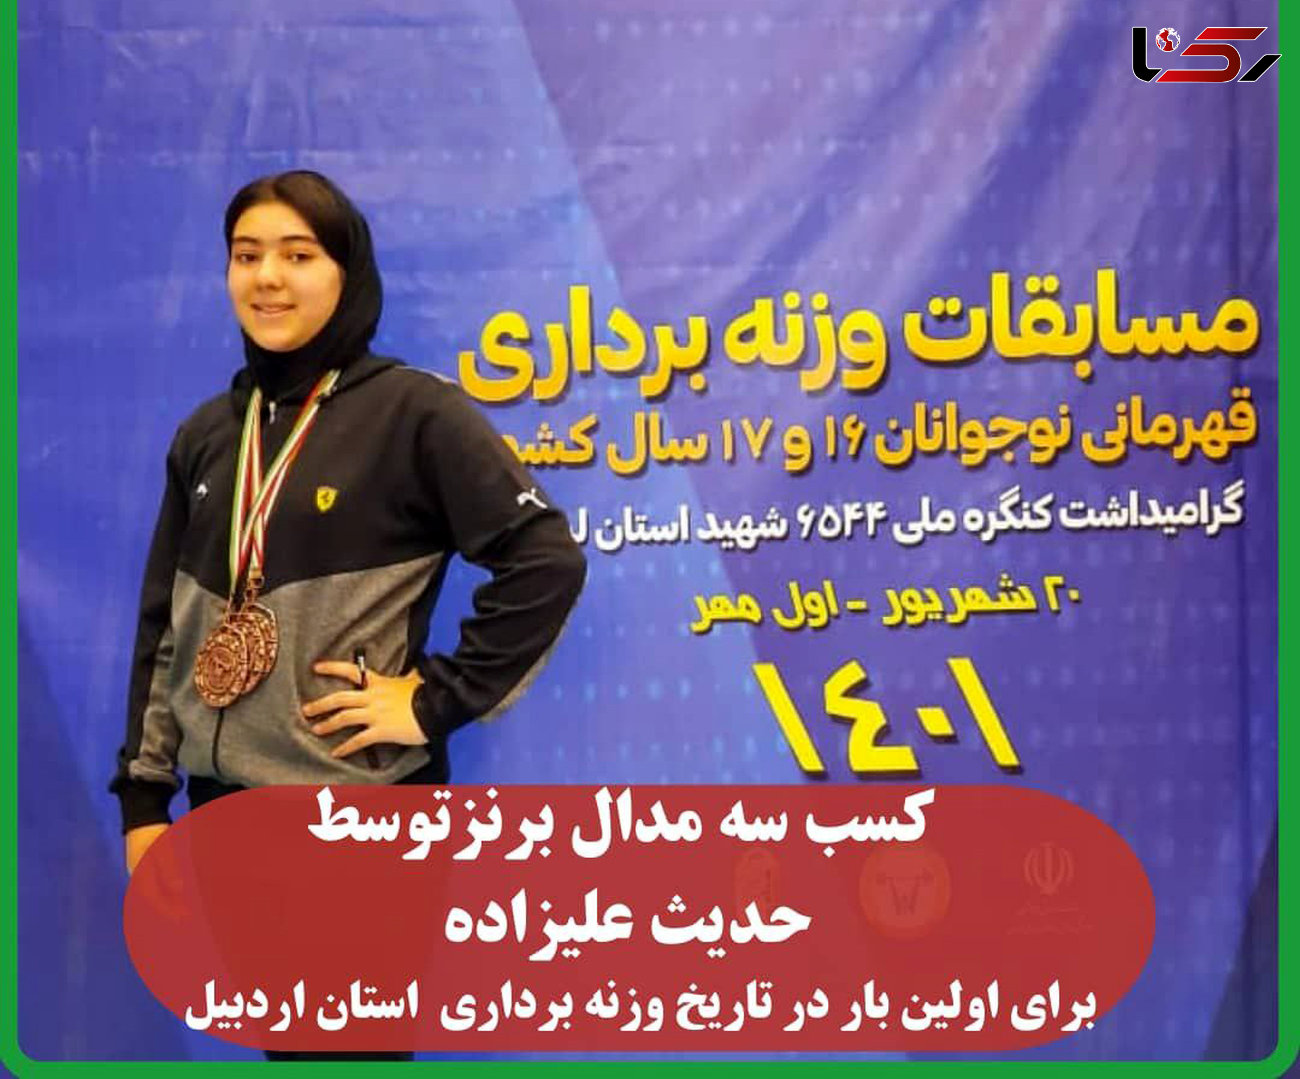 حدیث علیزاده برای اولین بار در تاریخ وزنه برداری استان اردبیل3 مدال برنز کسب کرد